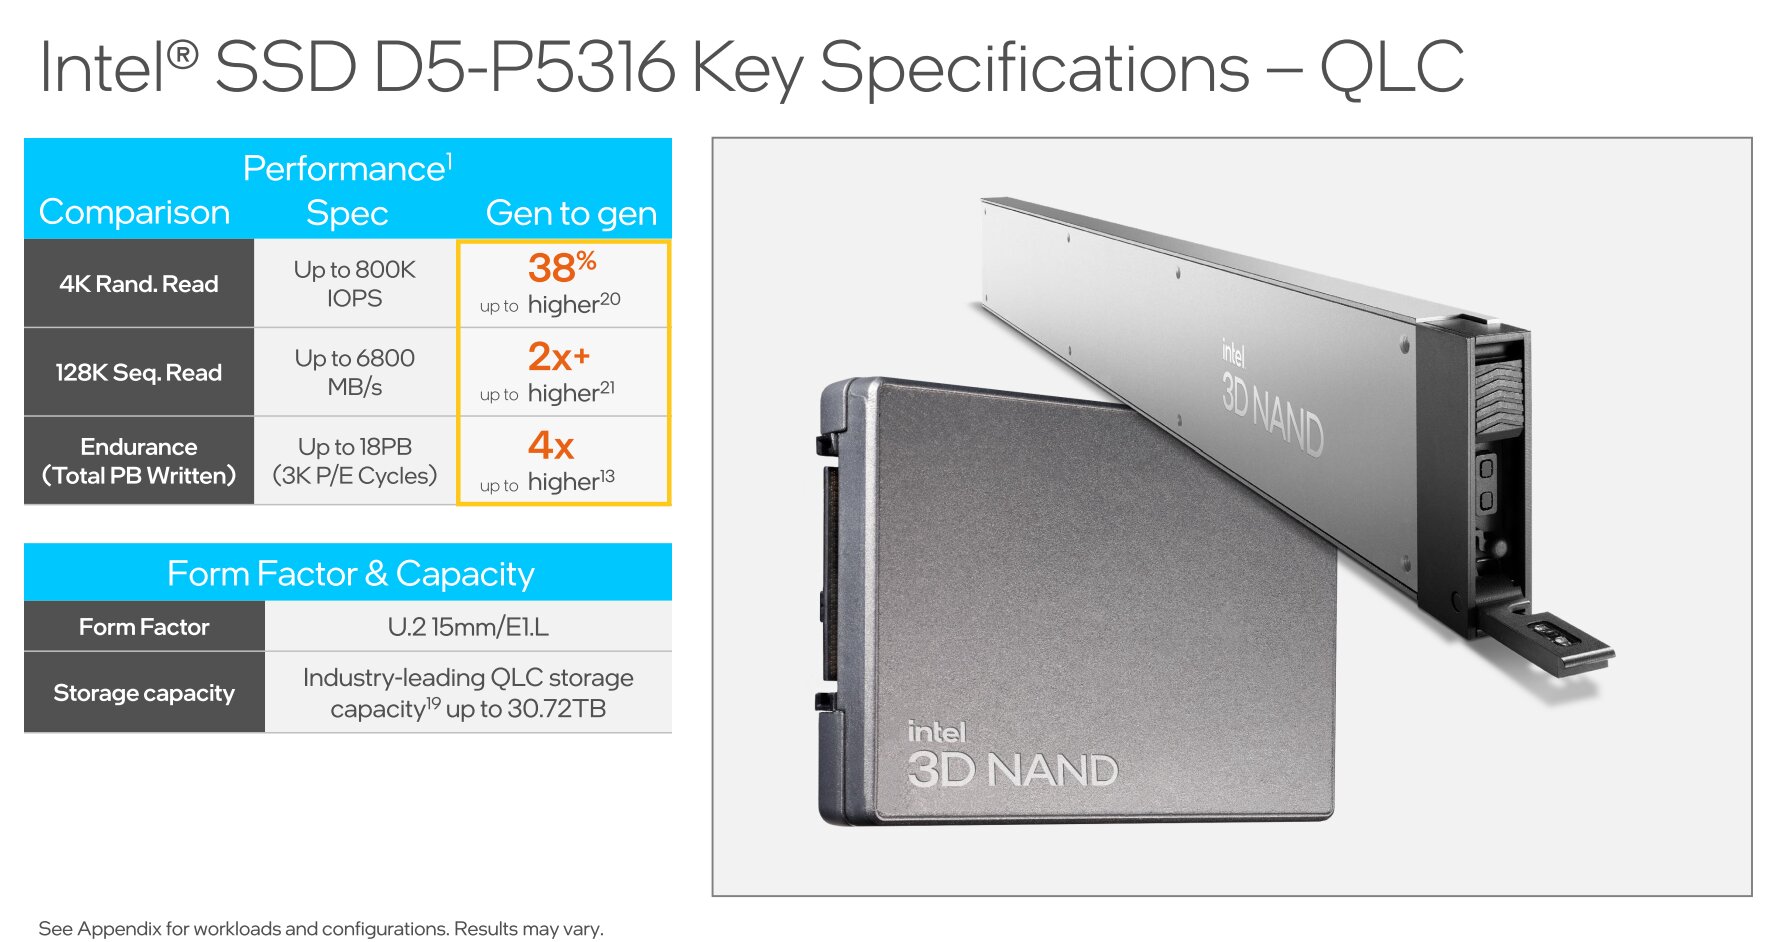 Intel SSD D5-P5316